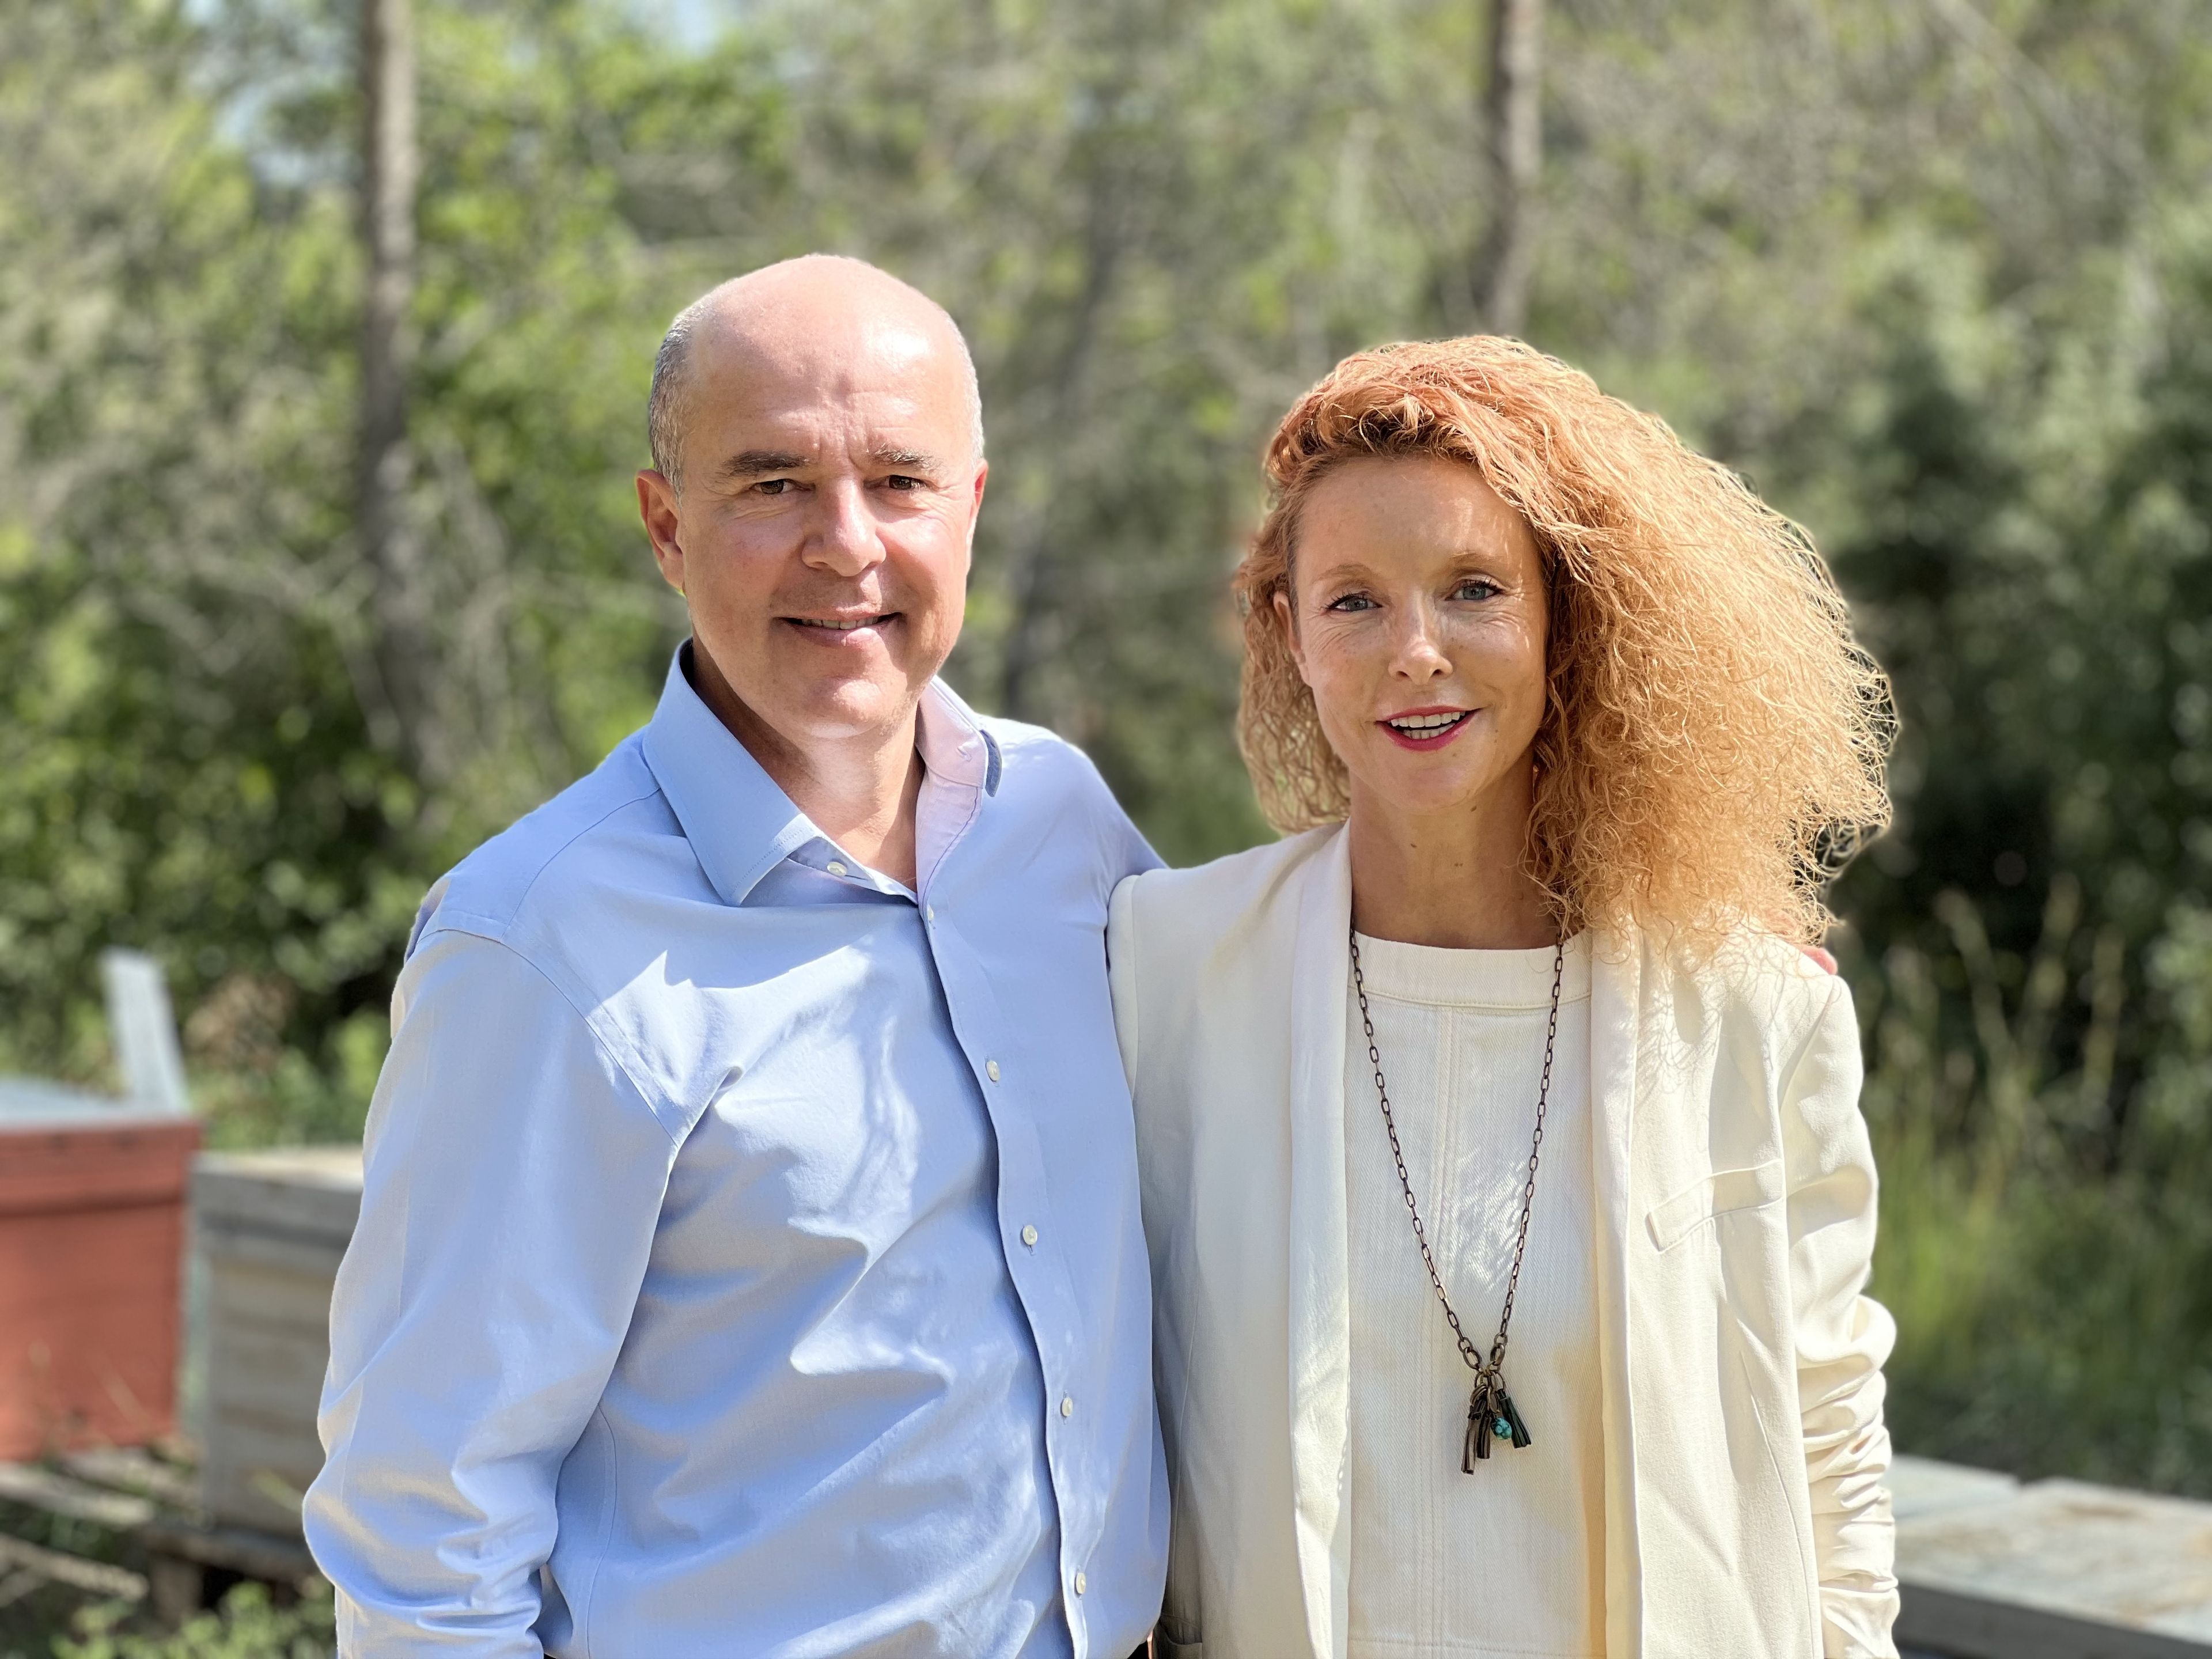 Jaime de Jaraíz, CEO y presidente de LG Iberia, y Paola Vecino, presidente de El rincón de la abeja.